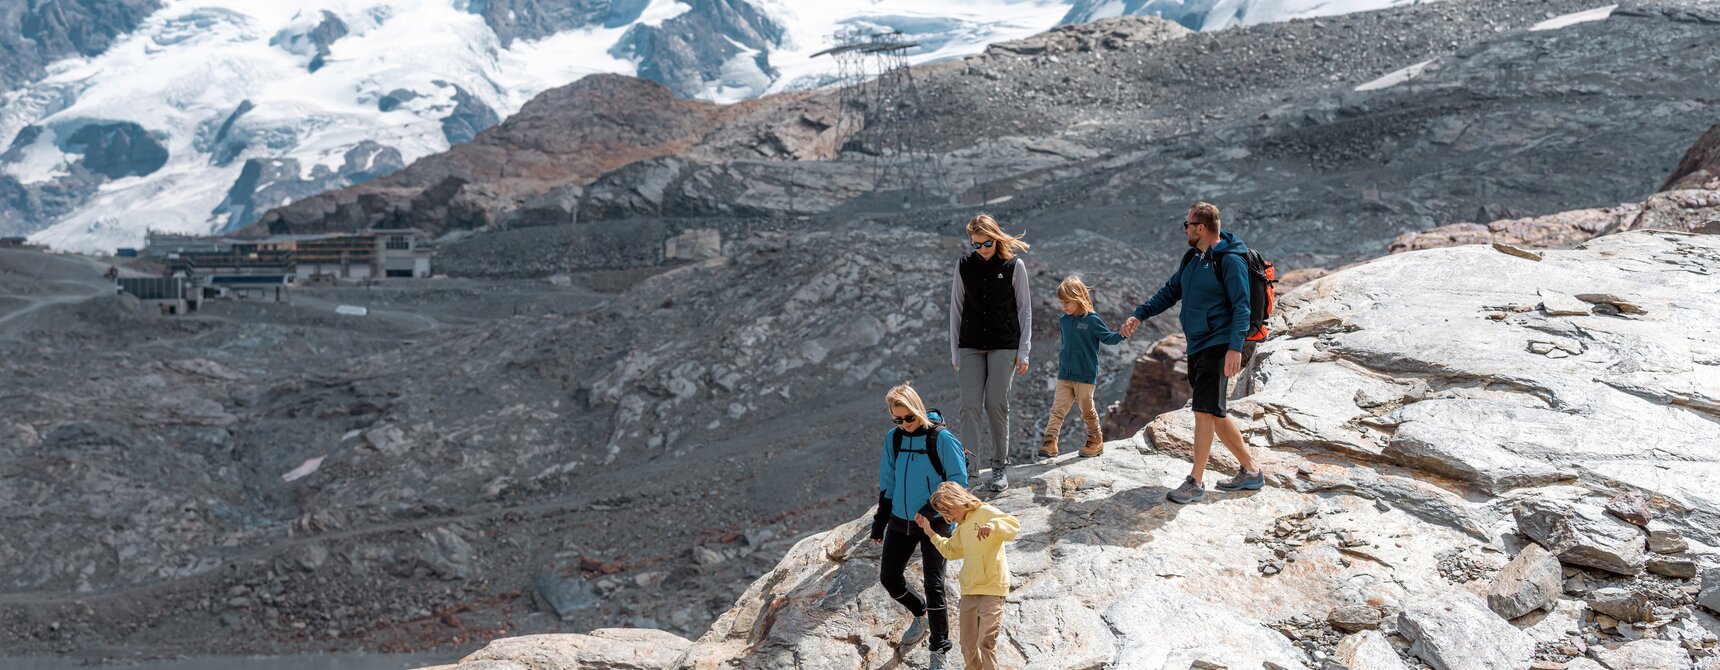 Familie wandert Felsen hinunter, im Hintergrund, Breithorn und Dufourspitze | © basic_home